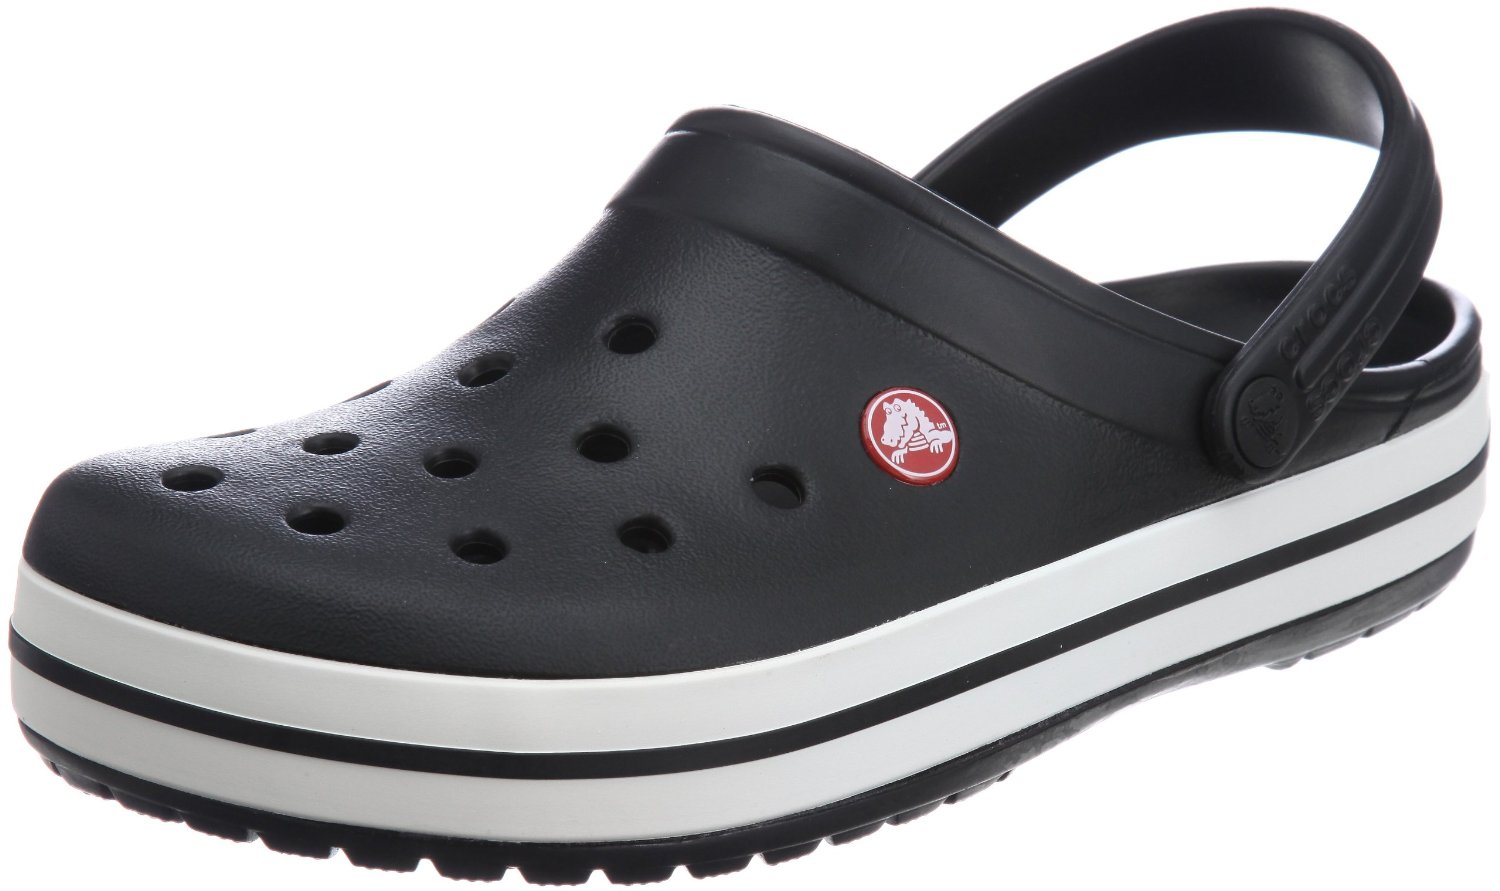 Crocs Shoes Crocs Men's Crocband Clog